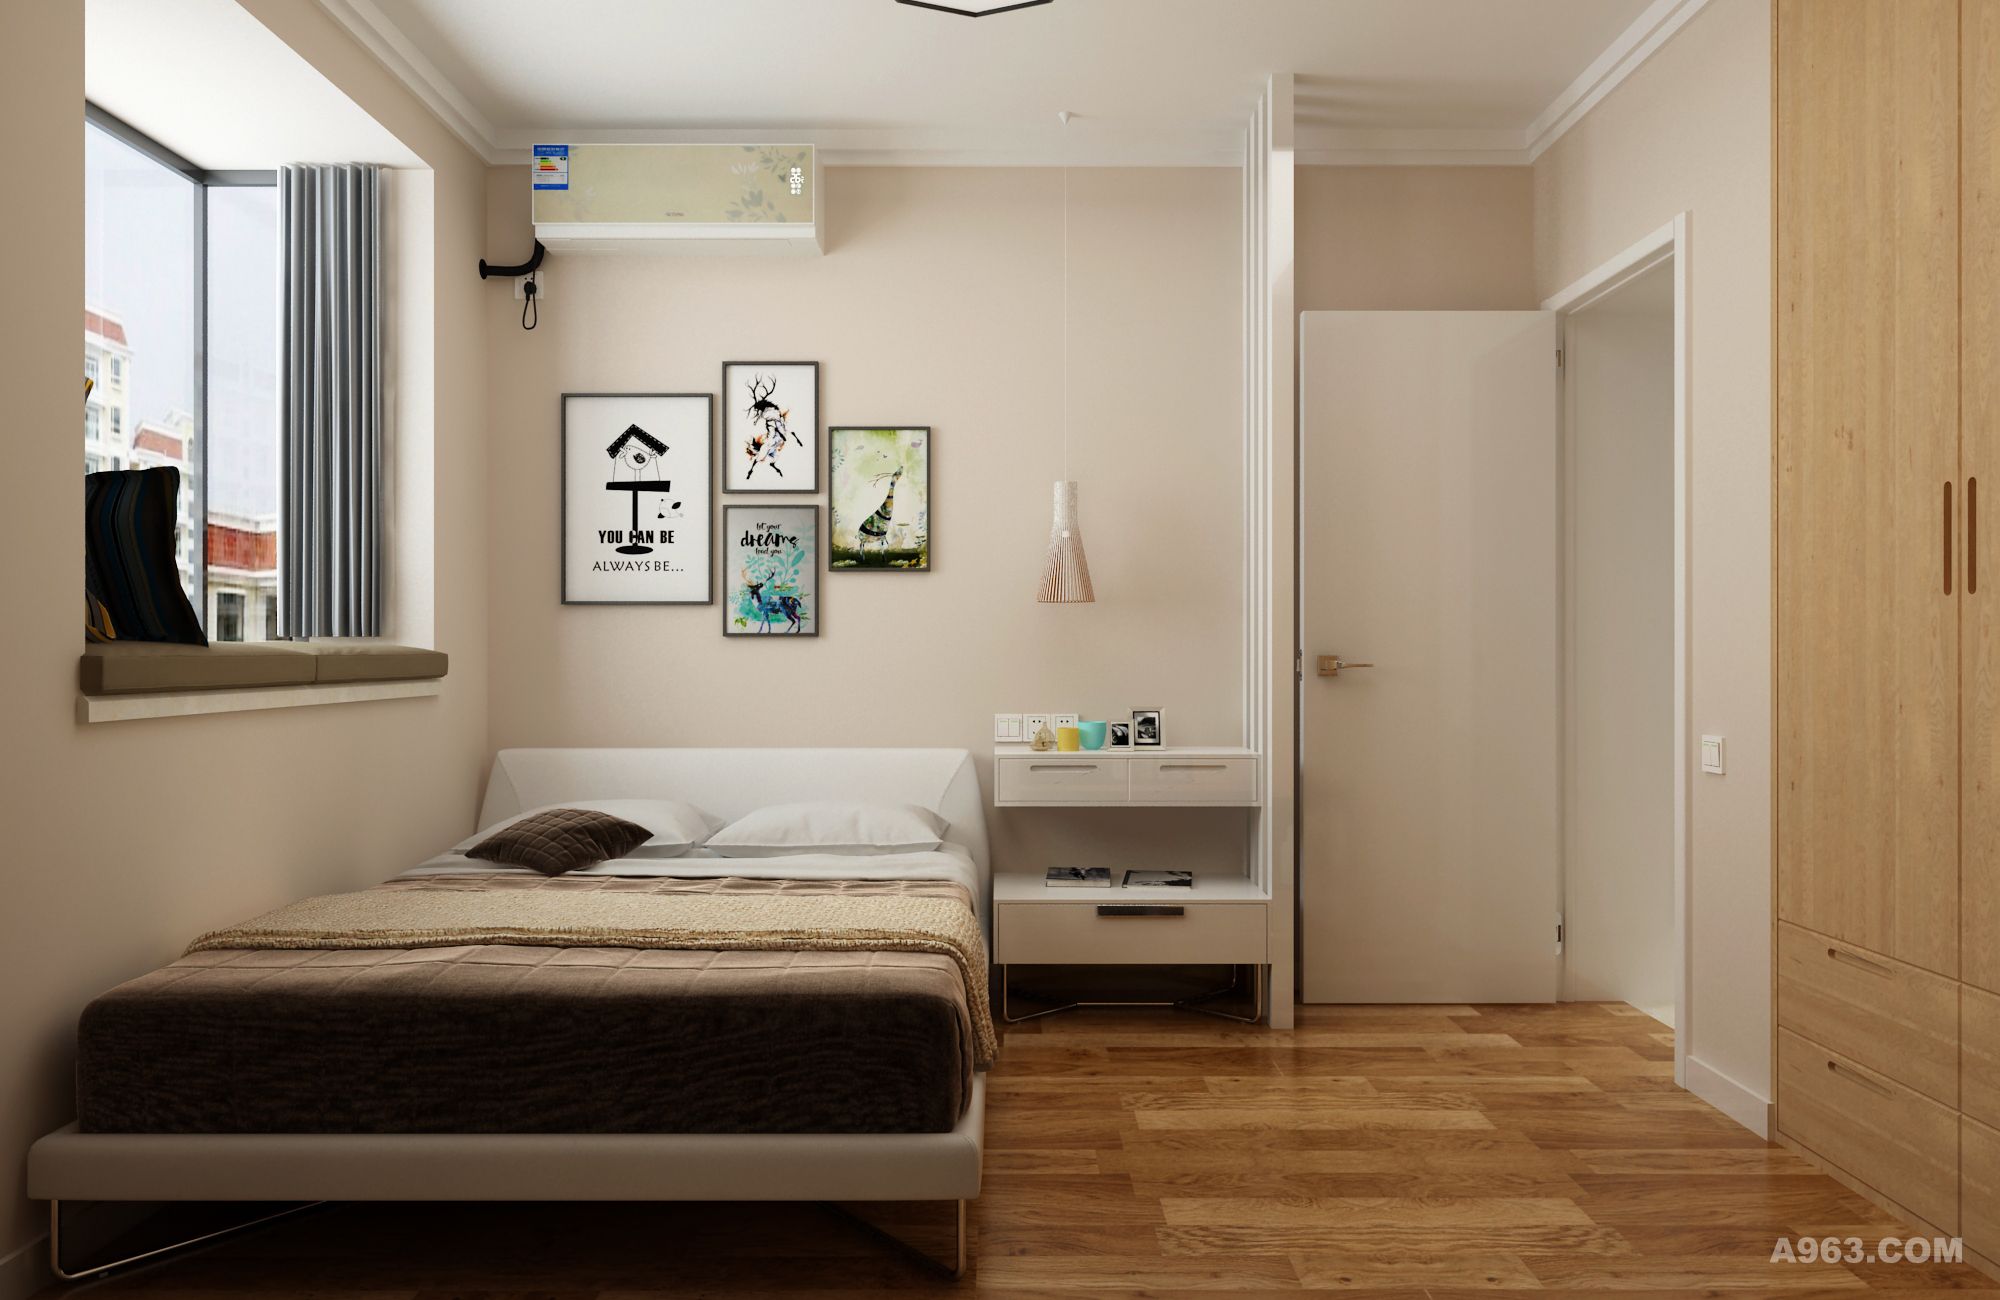 次卧设计采用米色及木色作为主色调，米色是视觉最放松的颜色之一，同样具有优雅大气的特性，搭配木色地板和衣柜，使整个儿空间十分安静、温馨。